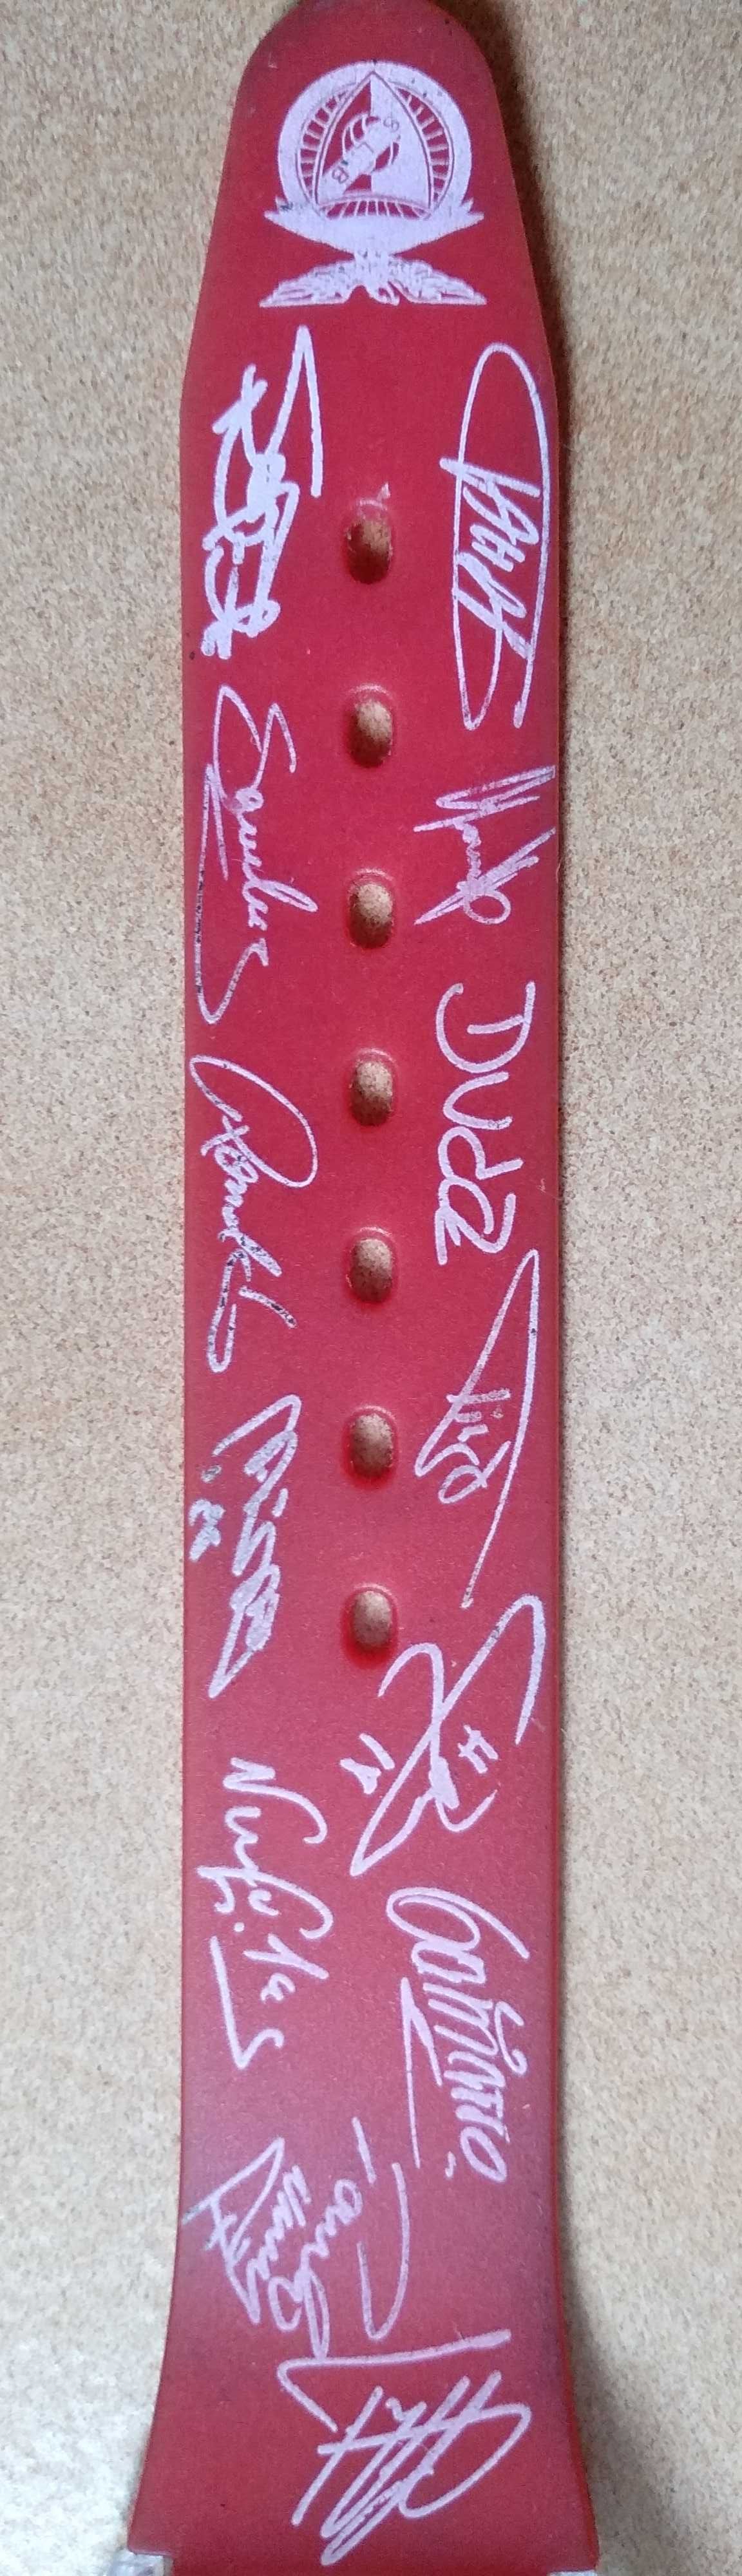 Relógio do Benfica com os autógrafos da equipa